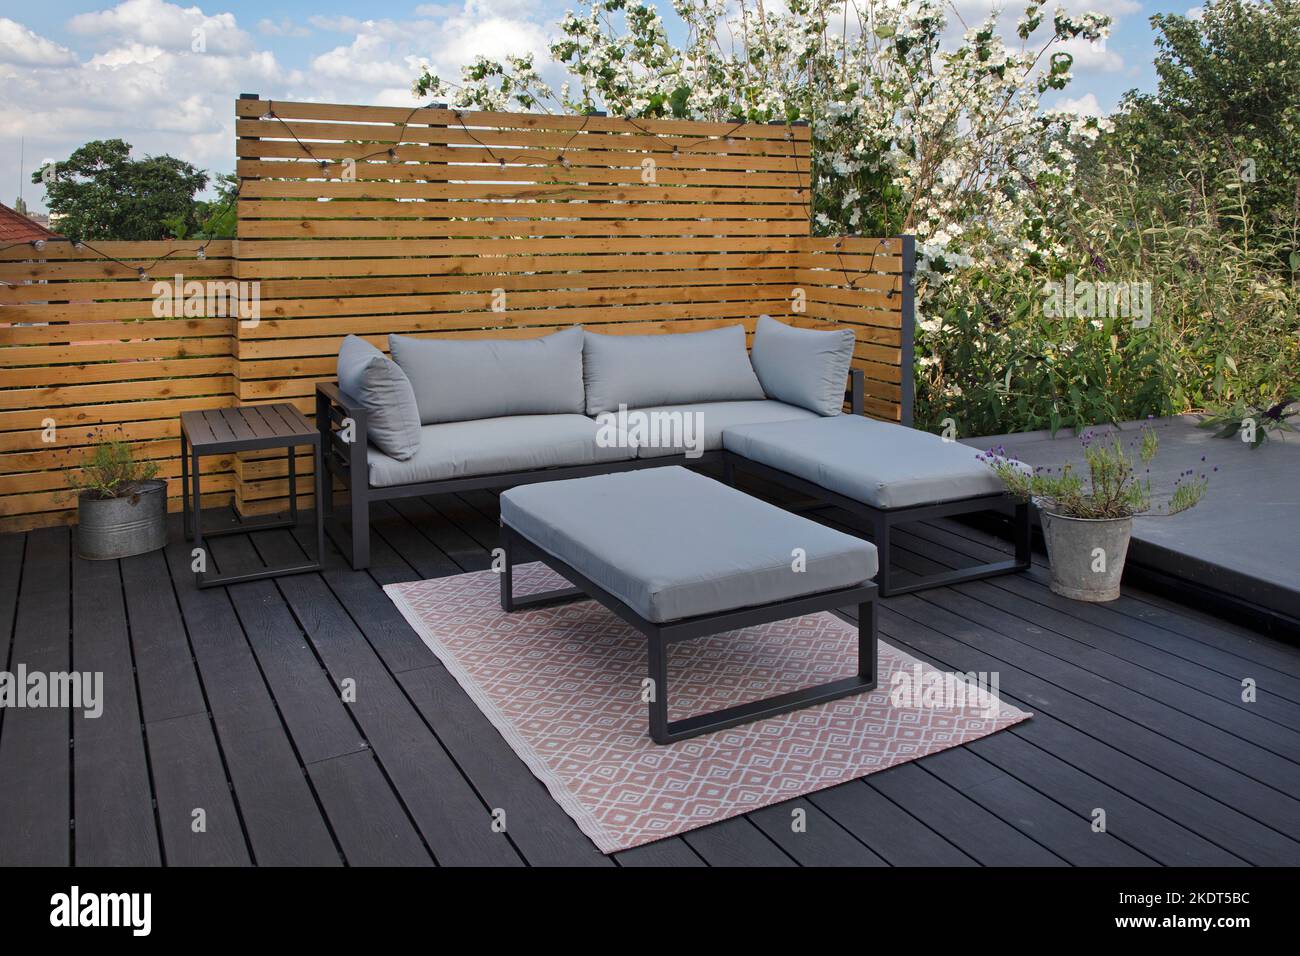 Contemporary garden seating on modern composite decking in garden,England Stock Photo